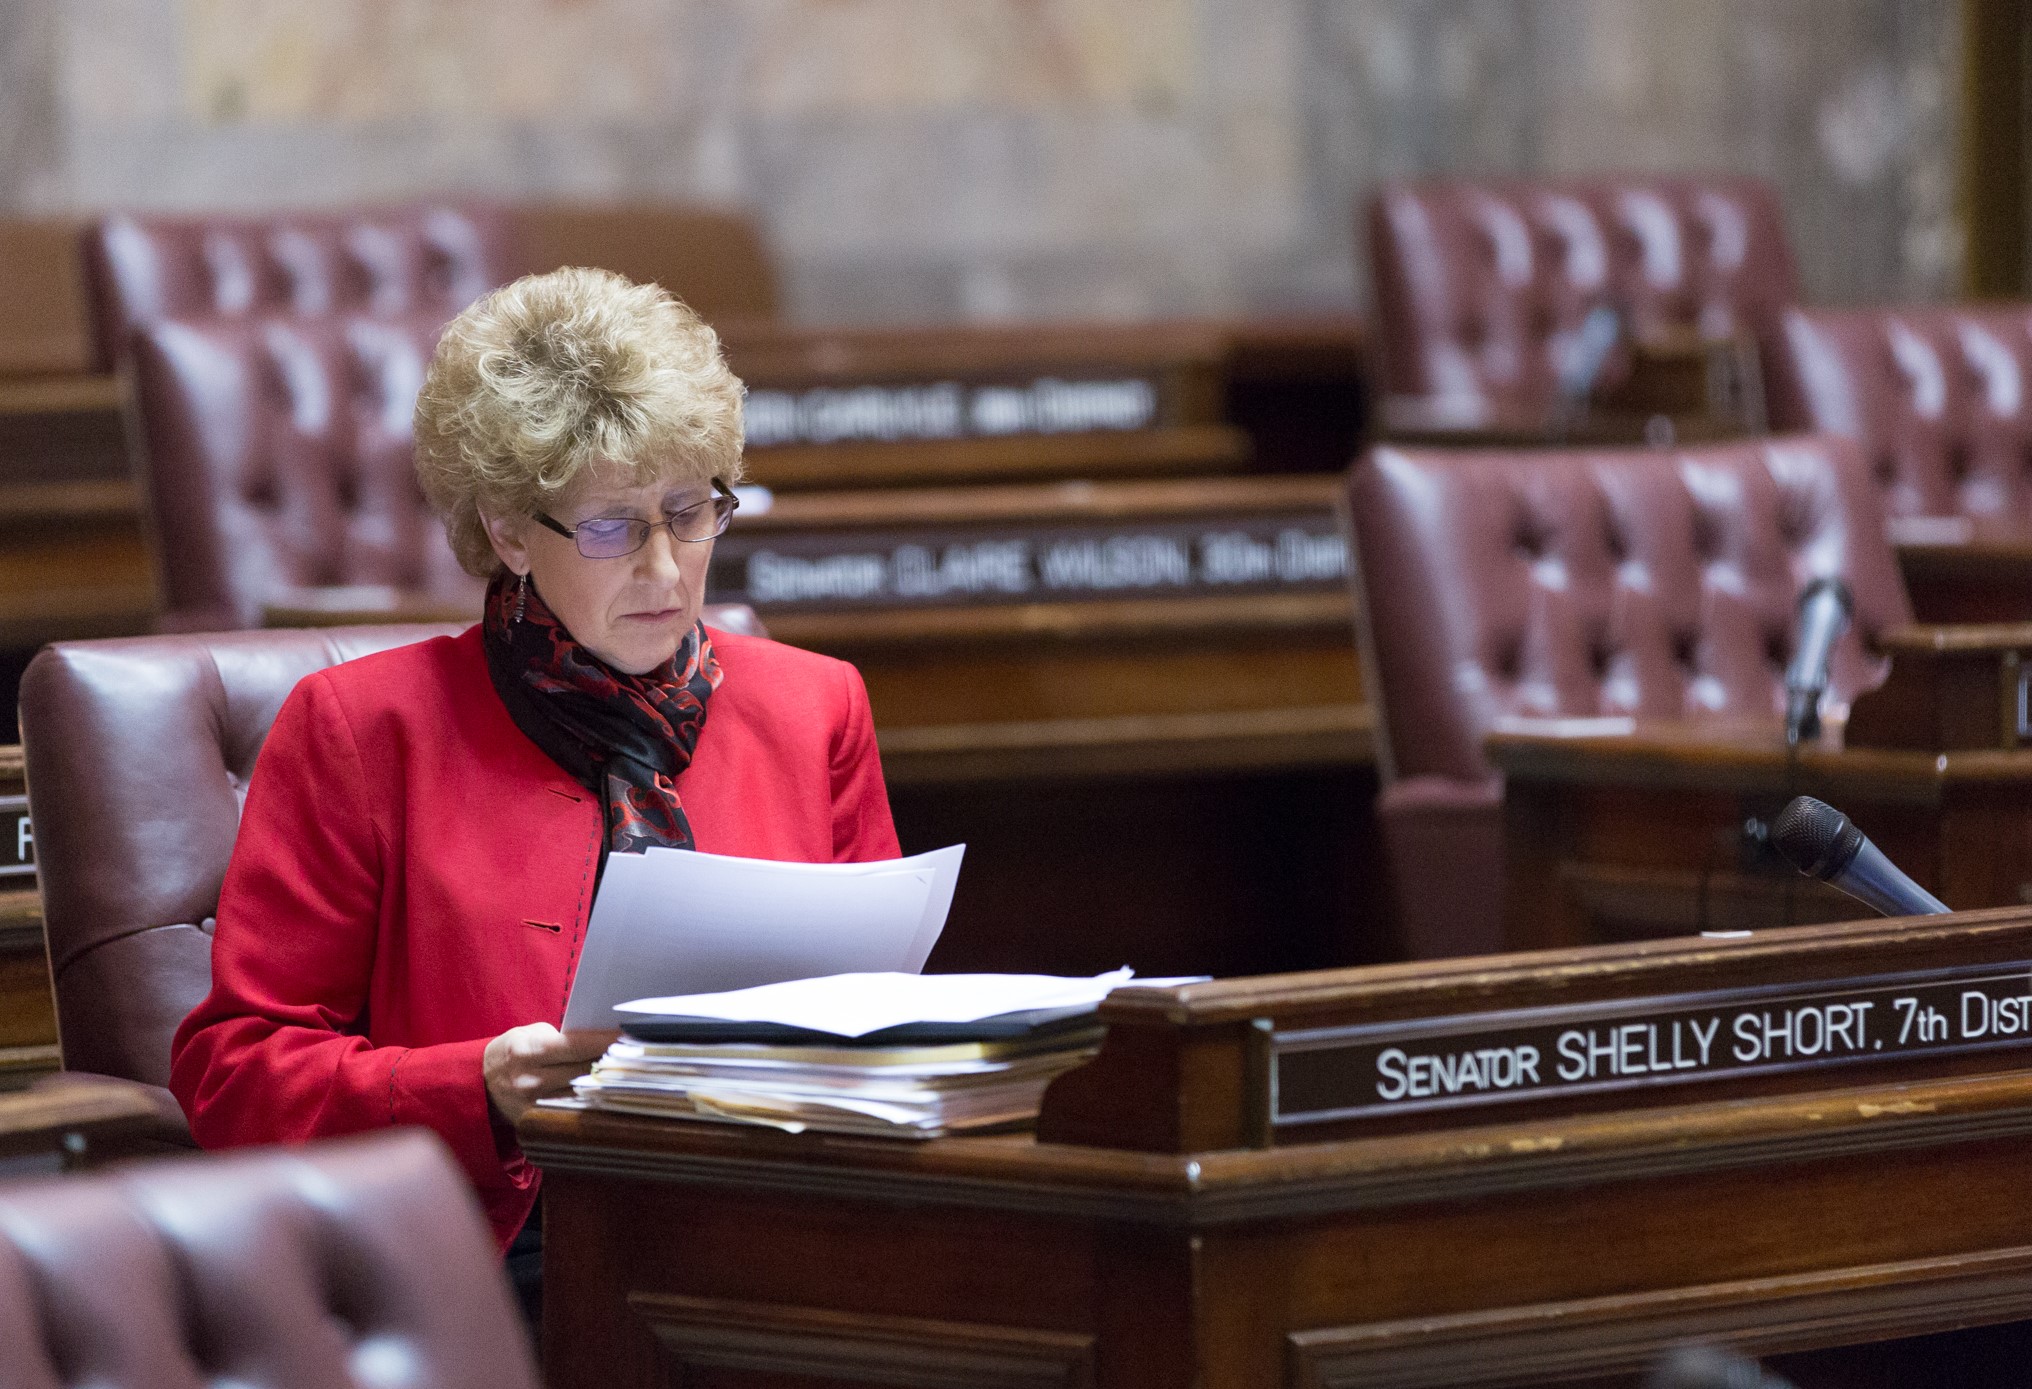 Sen. Short at her desk on the Senate floor.